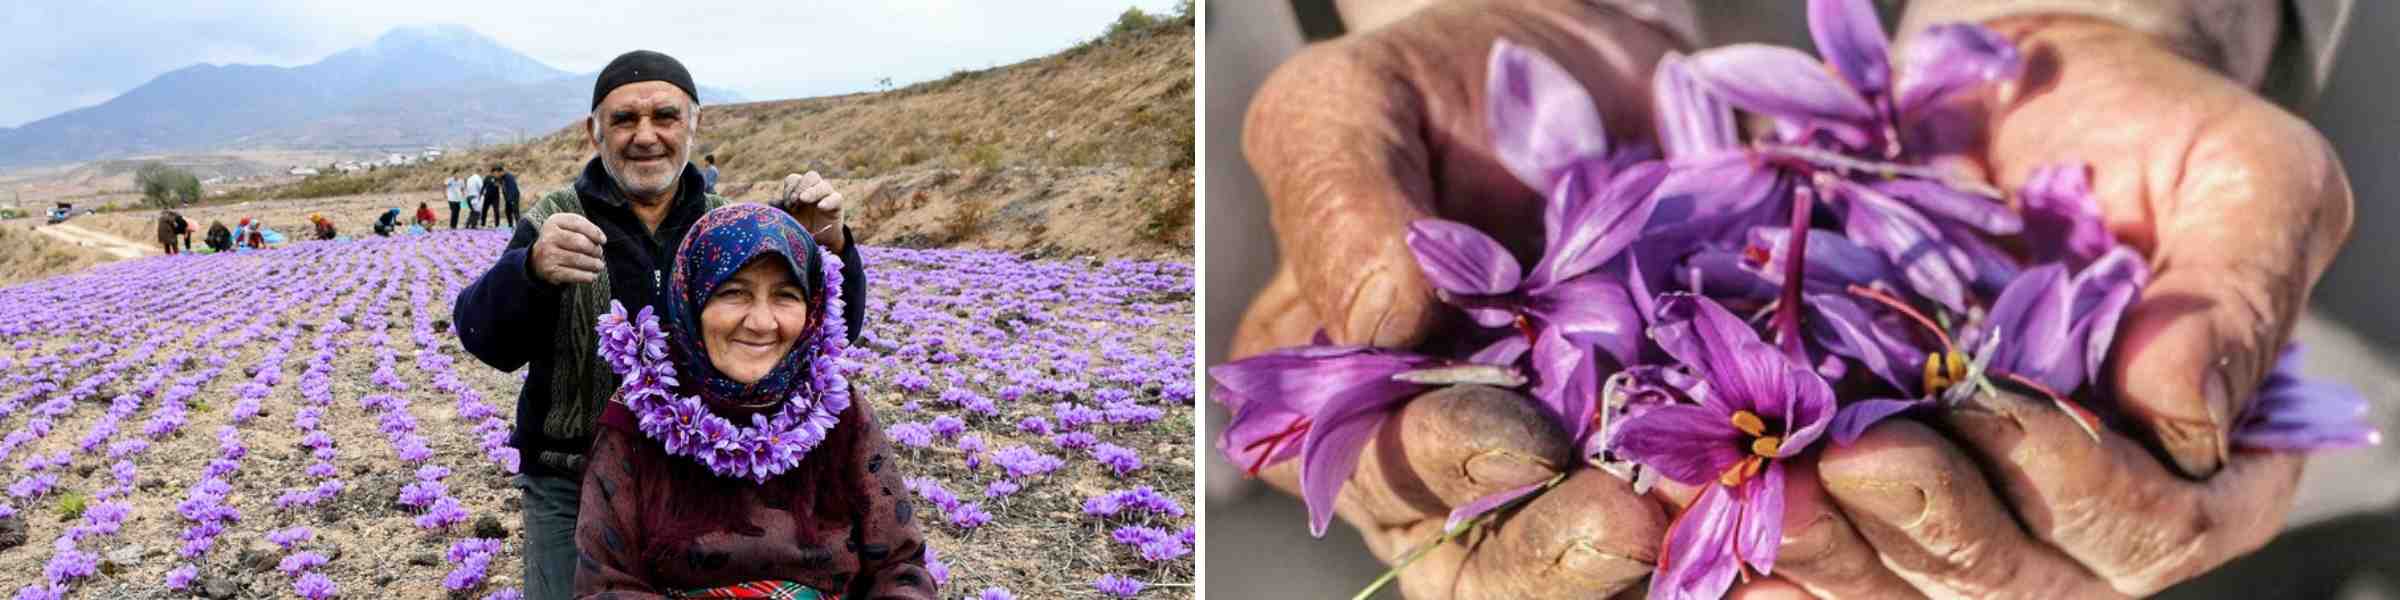 Saffron farming couple and flowers